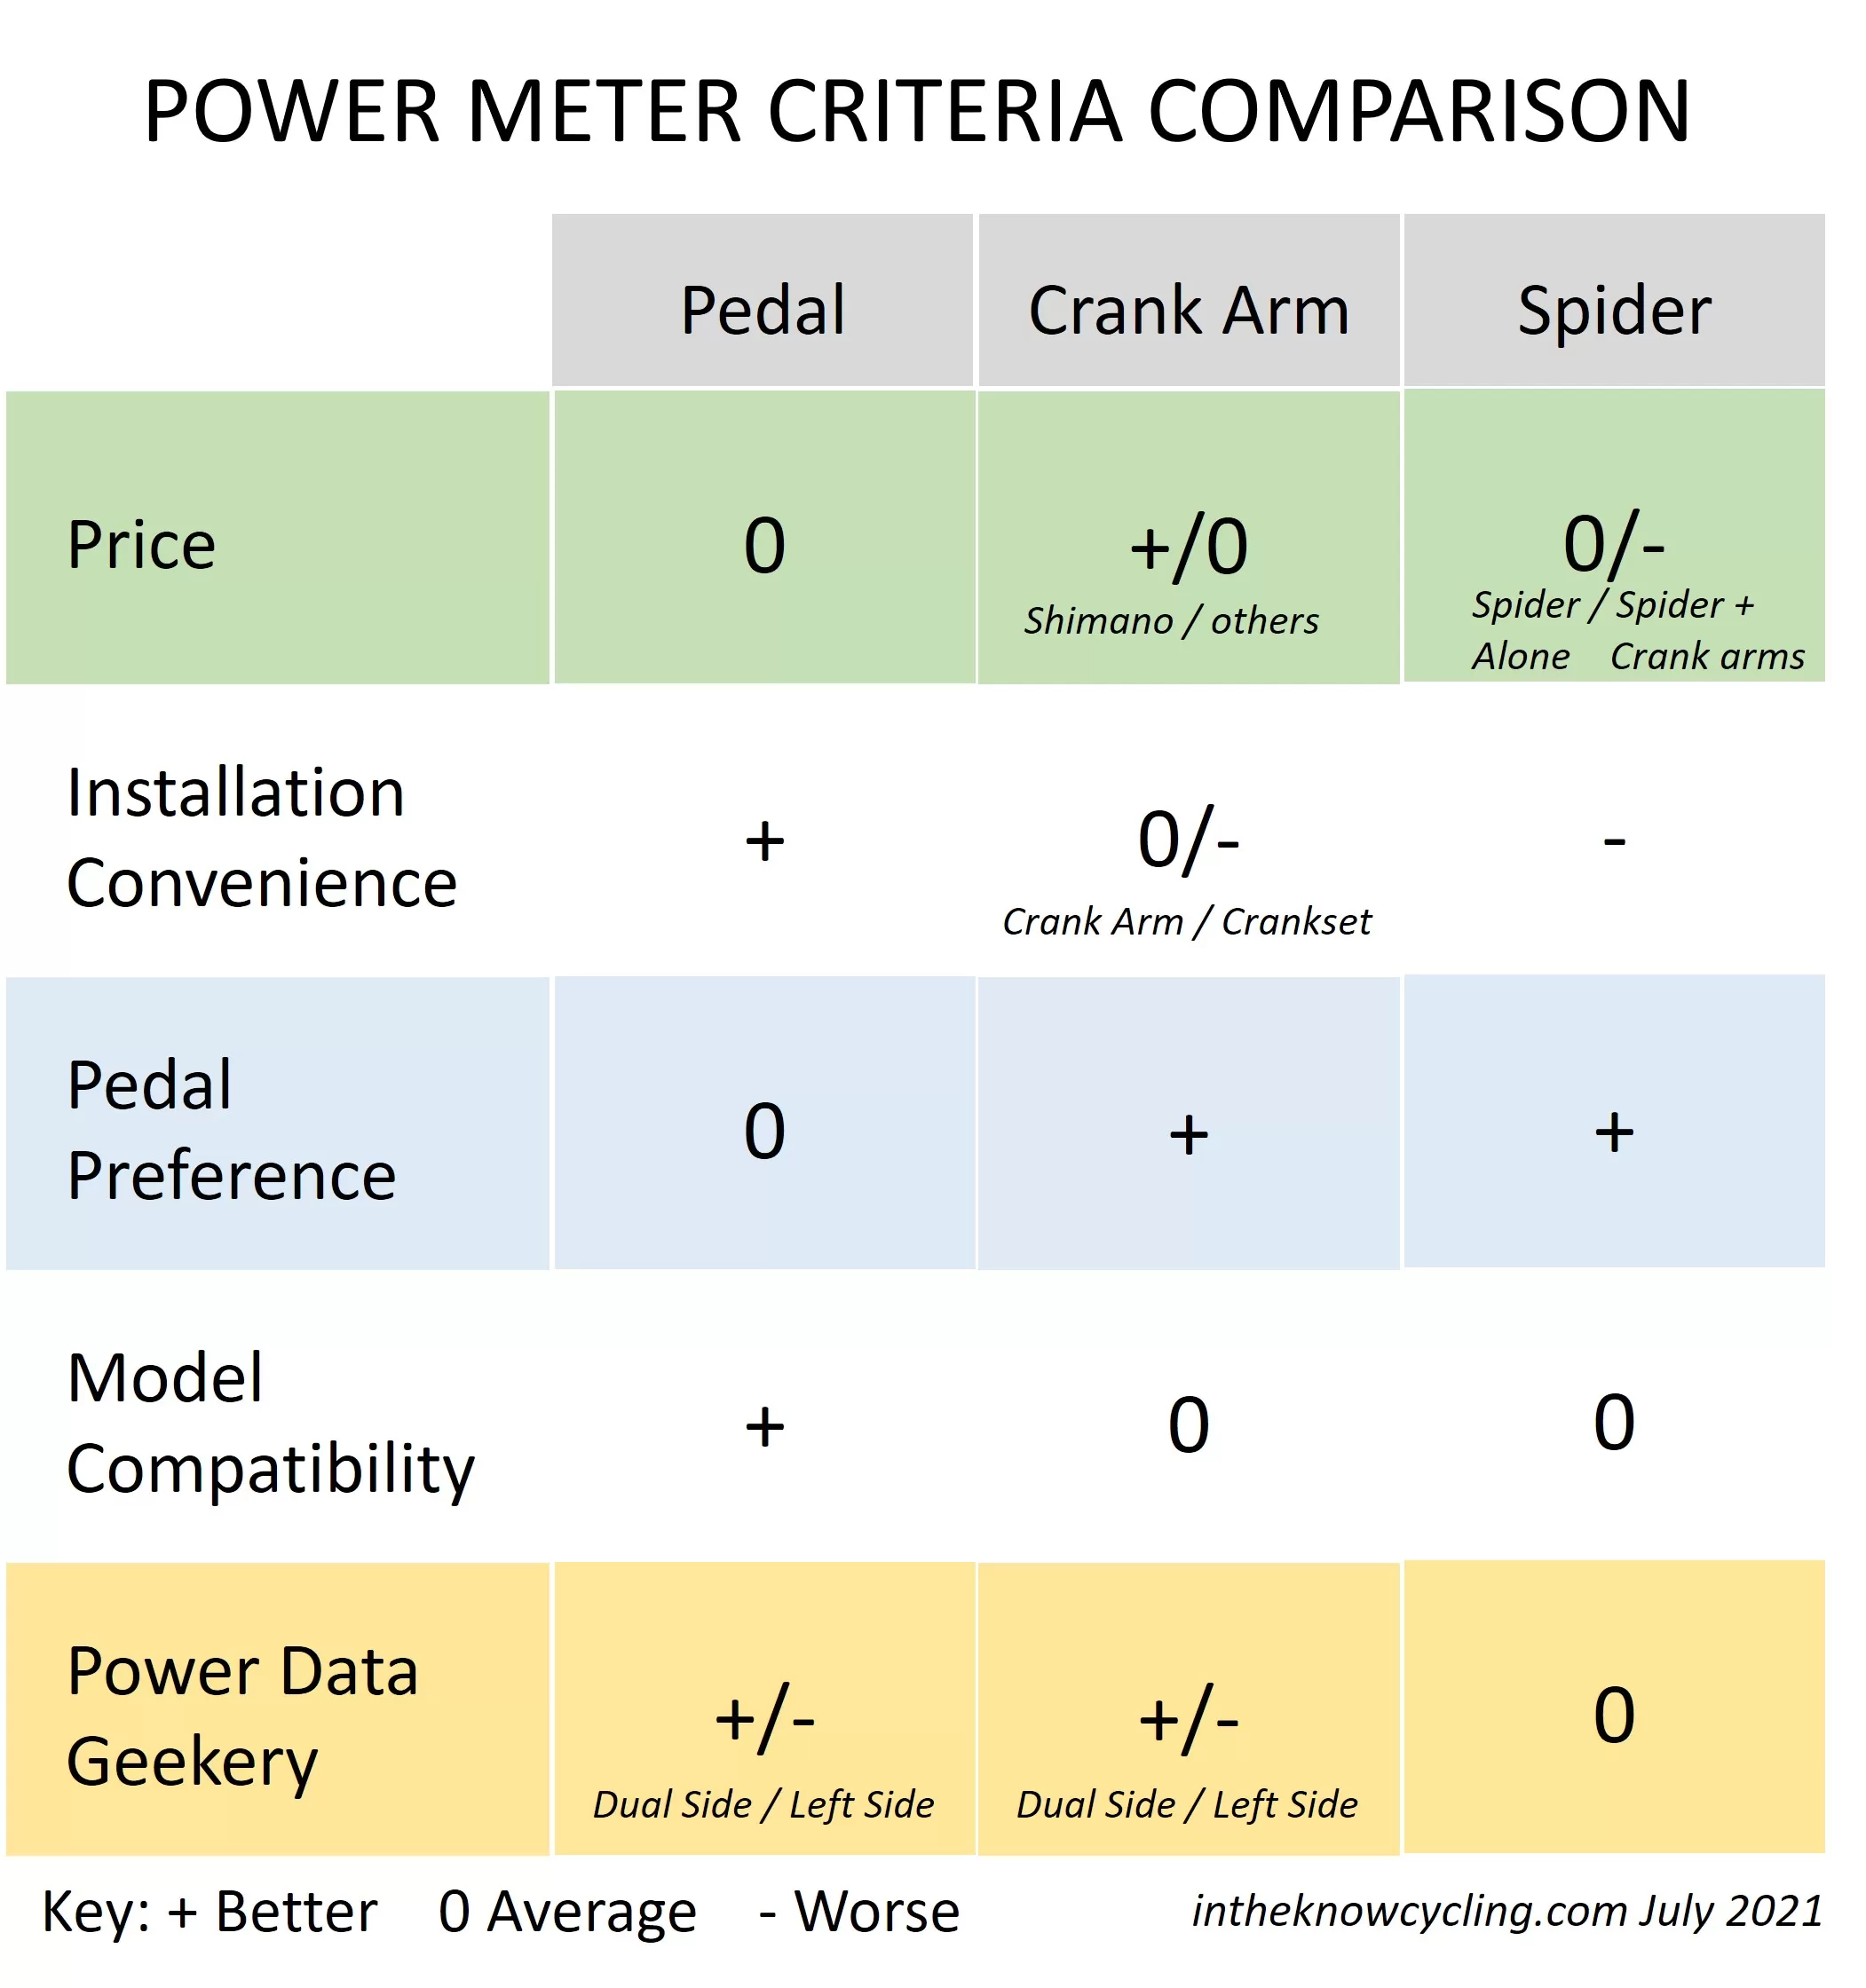 Power meter criteria comparison